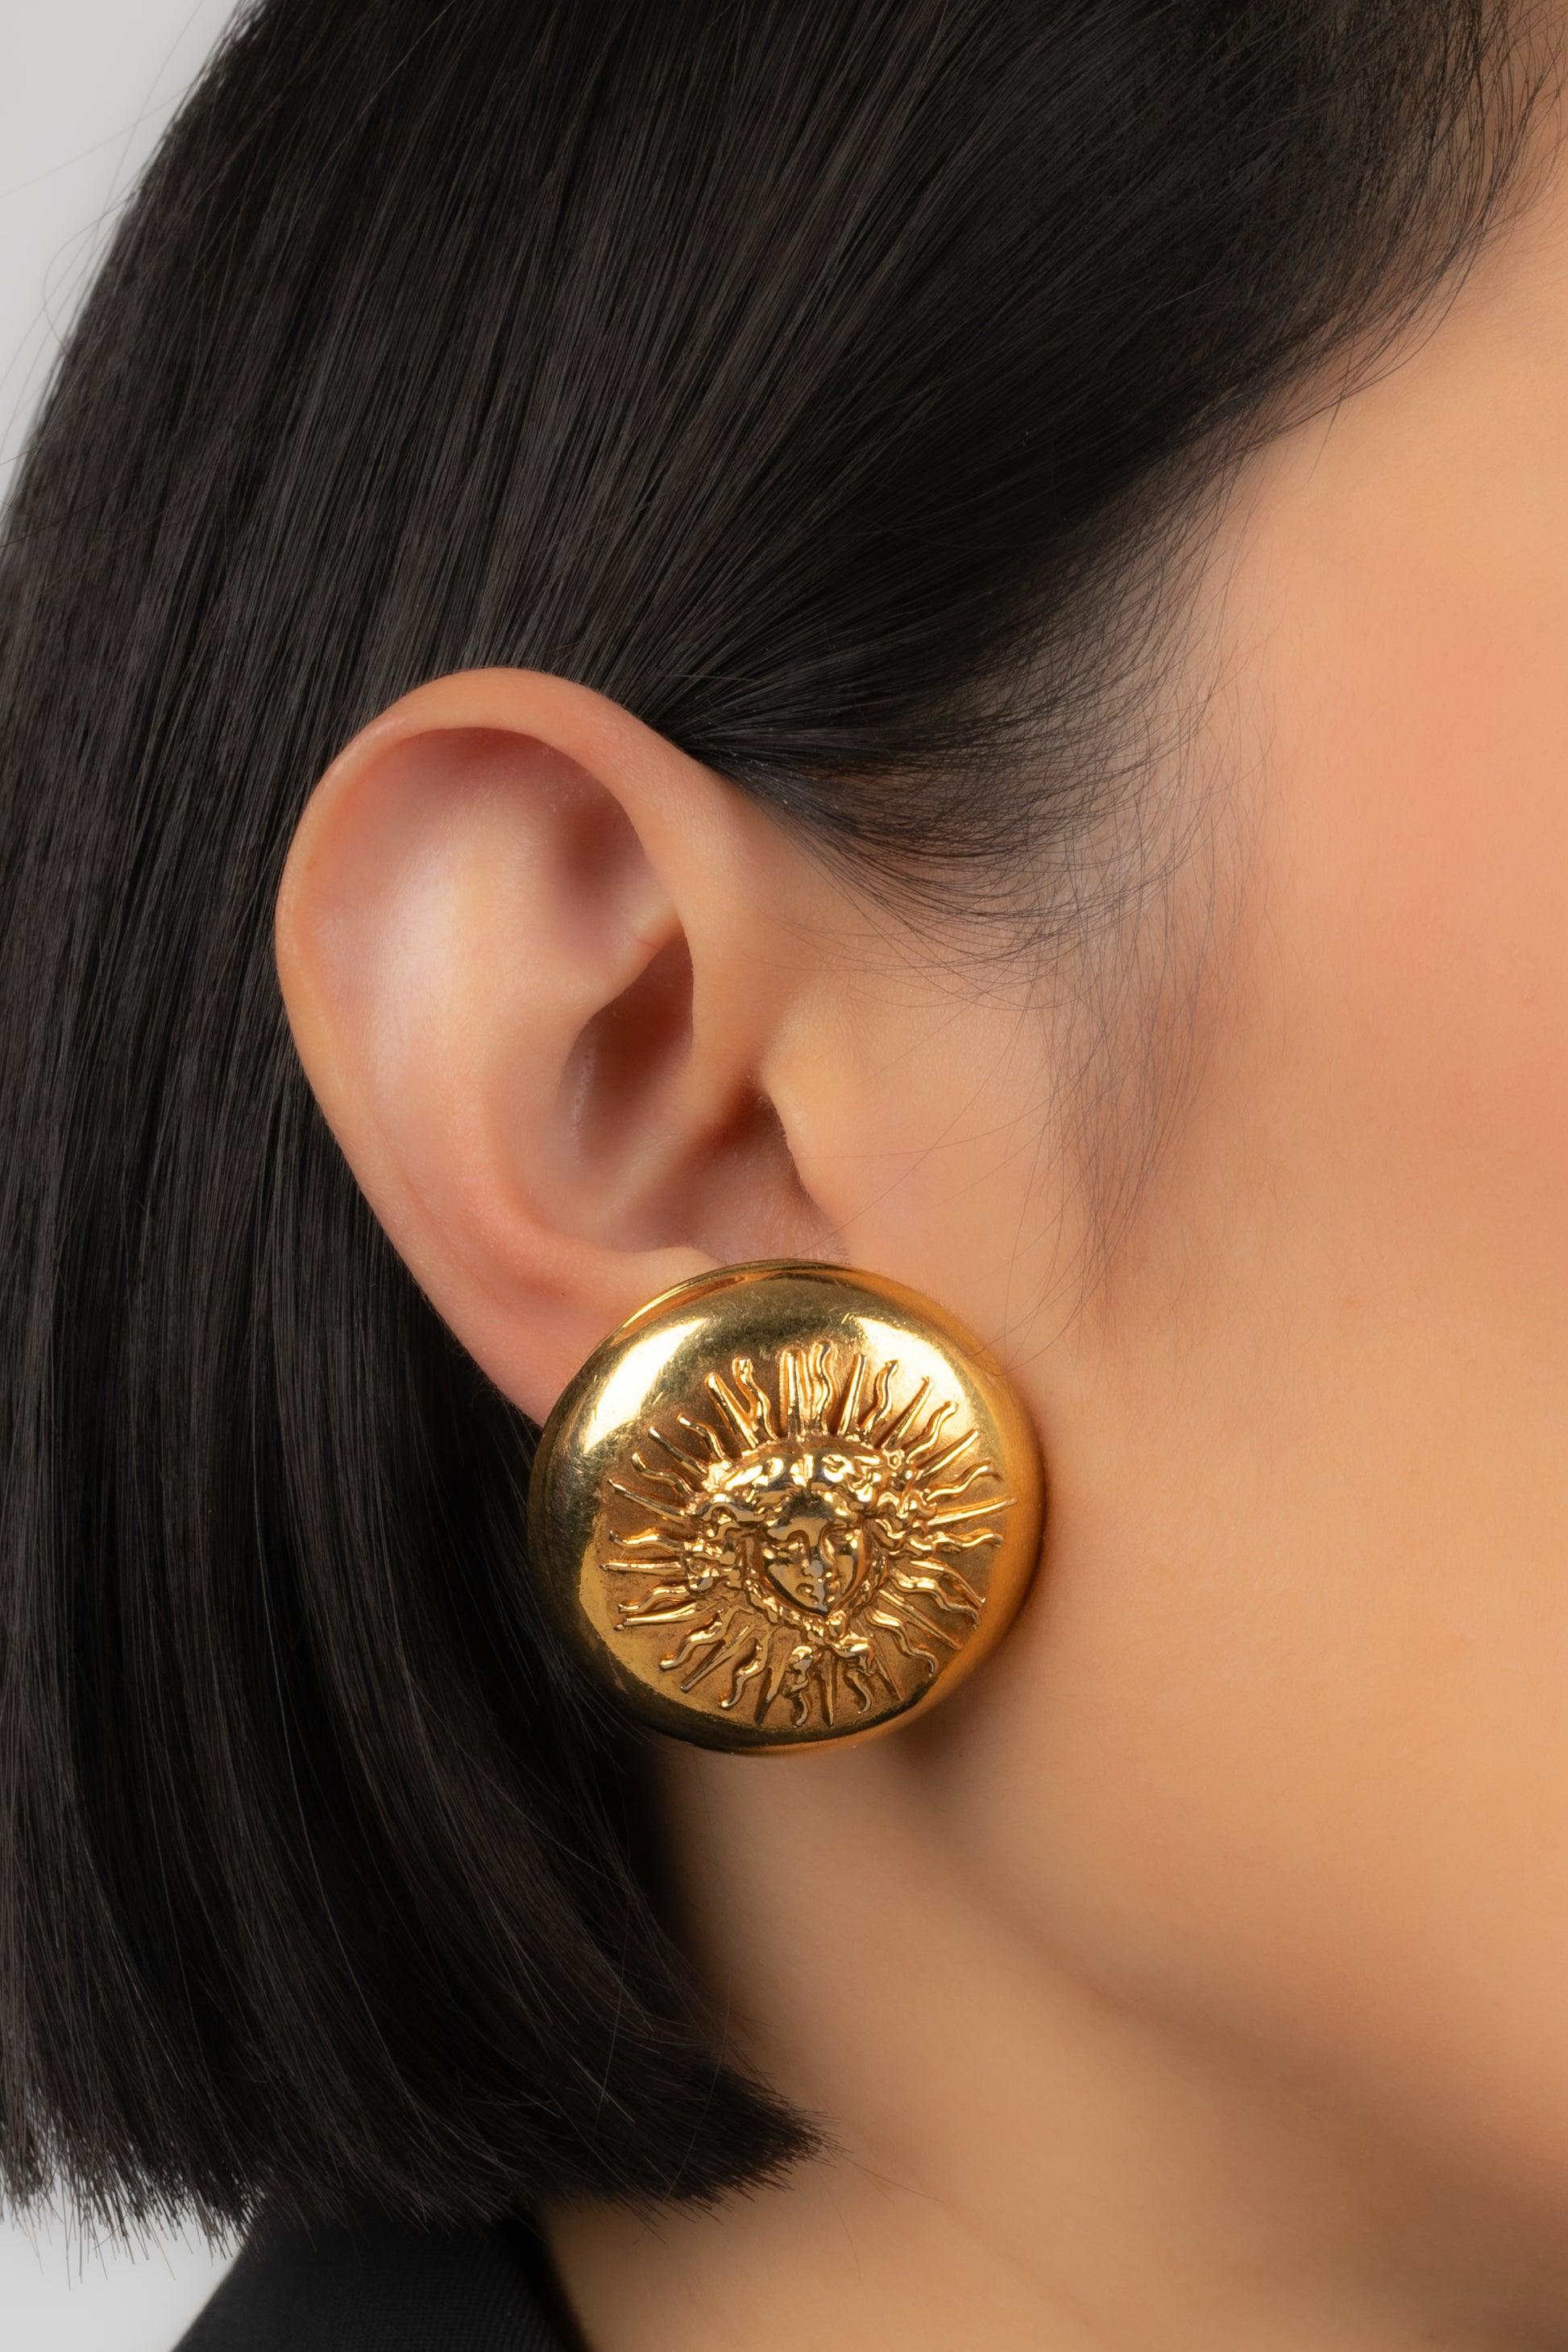 Chanel - Goldene runde Ohrringe aus Metall. Haute Couture-Schmuck mit einer Unterschrift auf dem Clip.

Zusätzliche Informationen:
Zustand: Sehr guter Zustand
Abmessungen: Durchmesser: 3,5 cm

Sellers Referenz: BOB127